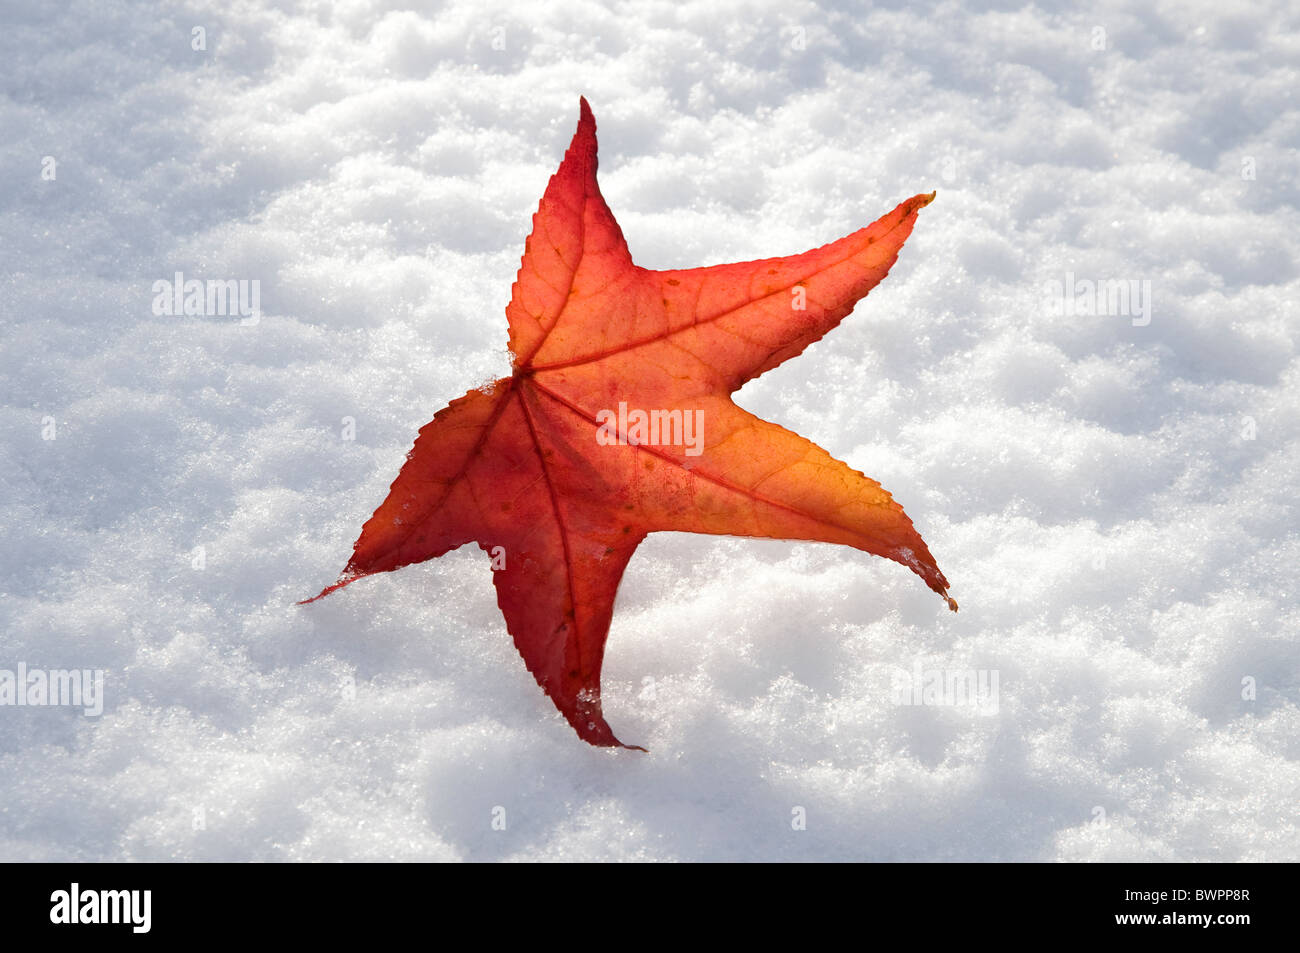 Red maple leaf sul bianco della neve Foto Stock